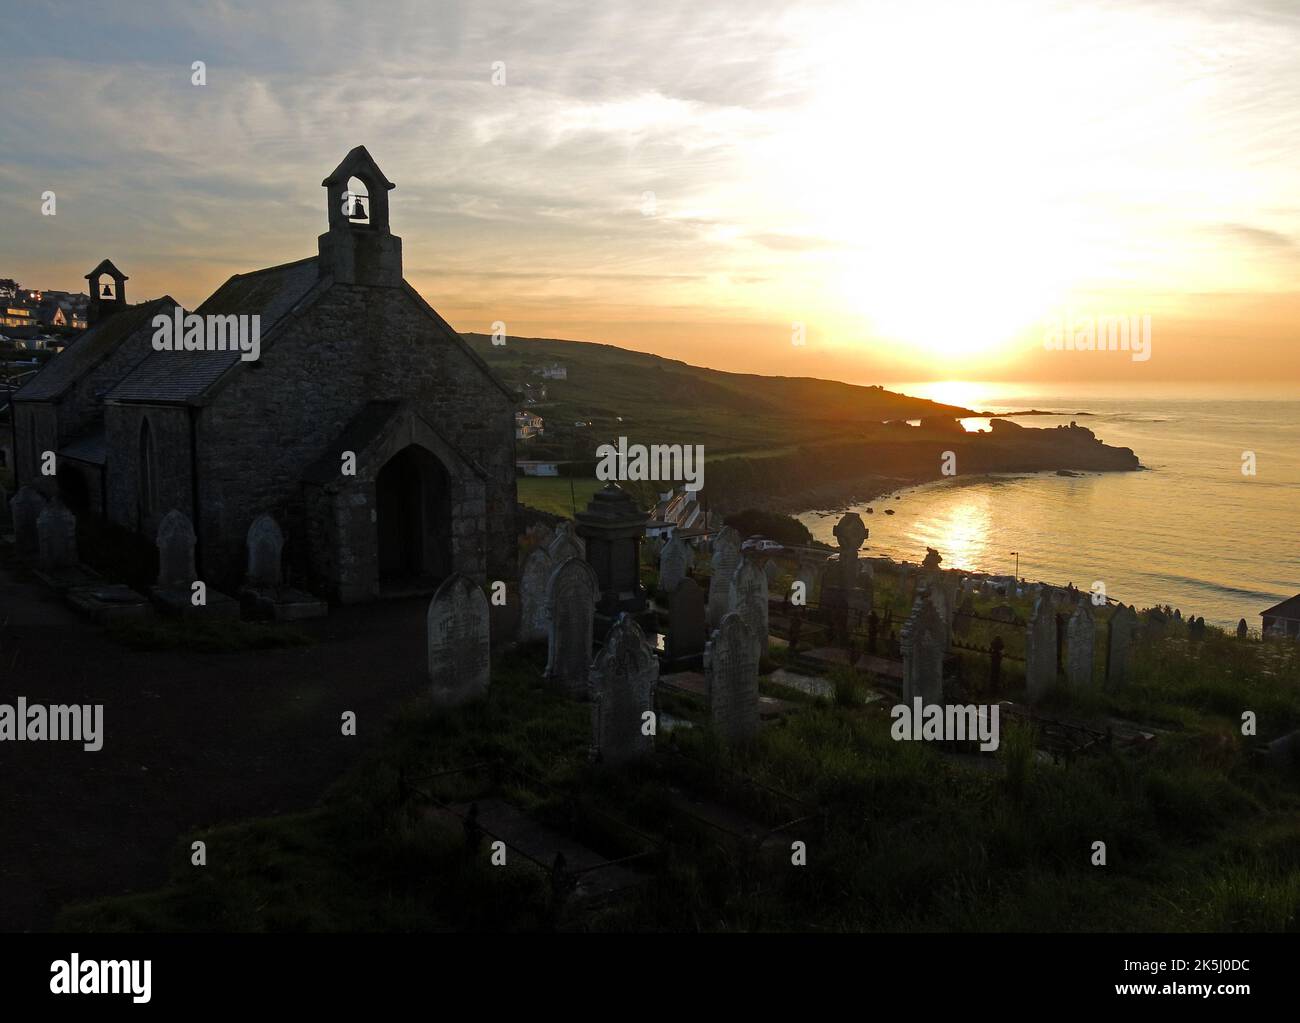 St Ives Barmidi, chapelle et cimetière, sur la plage de Porthmeor, bord de mer, Cornouailles, Angleterre, Royaume-Uni, TR26 1AB Banque D'Images